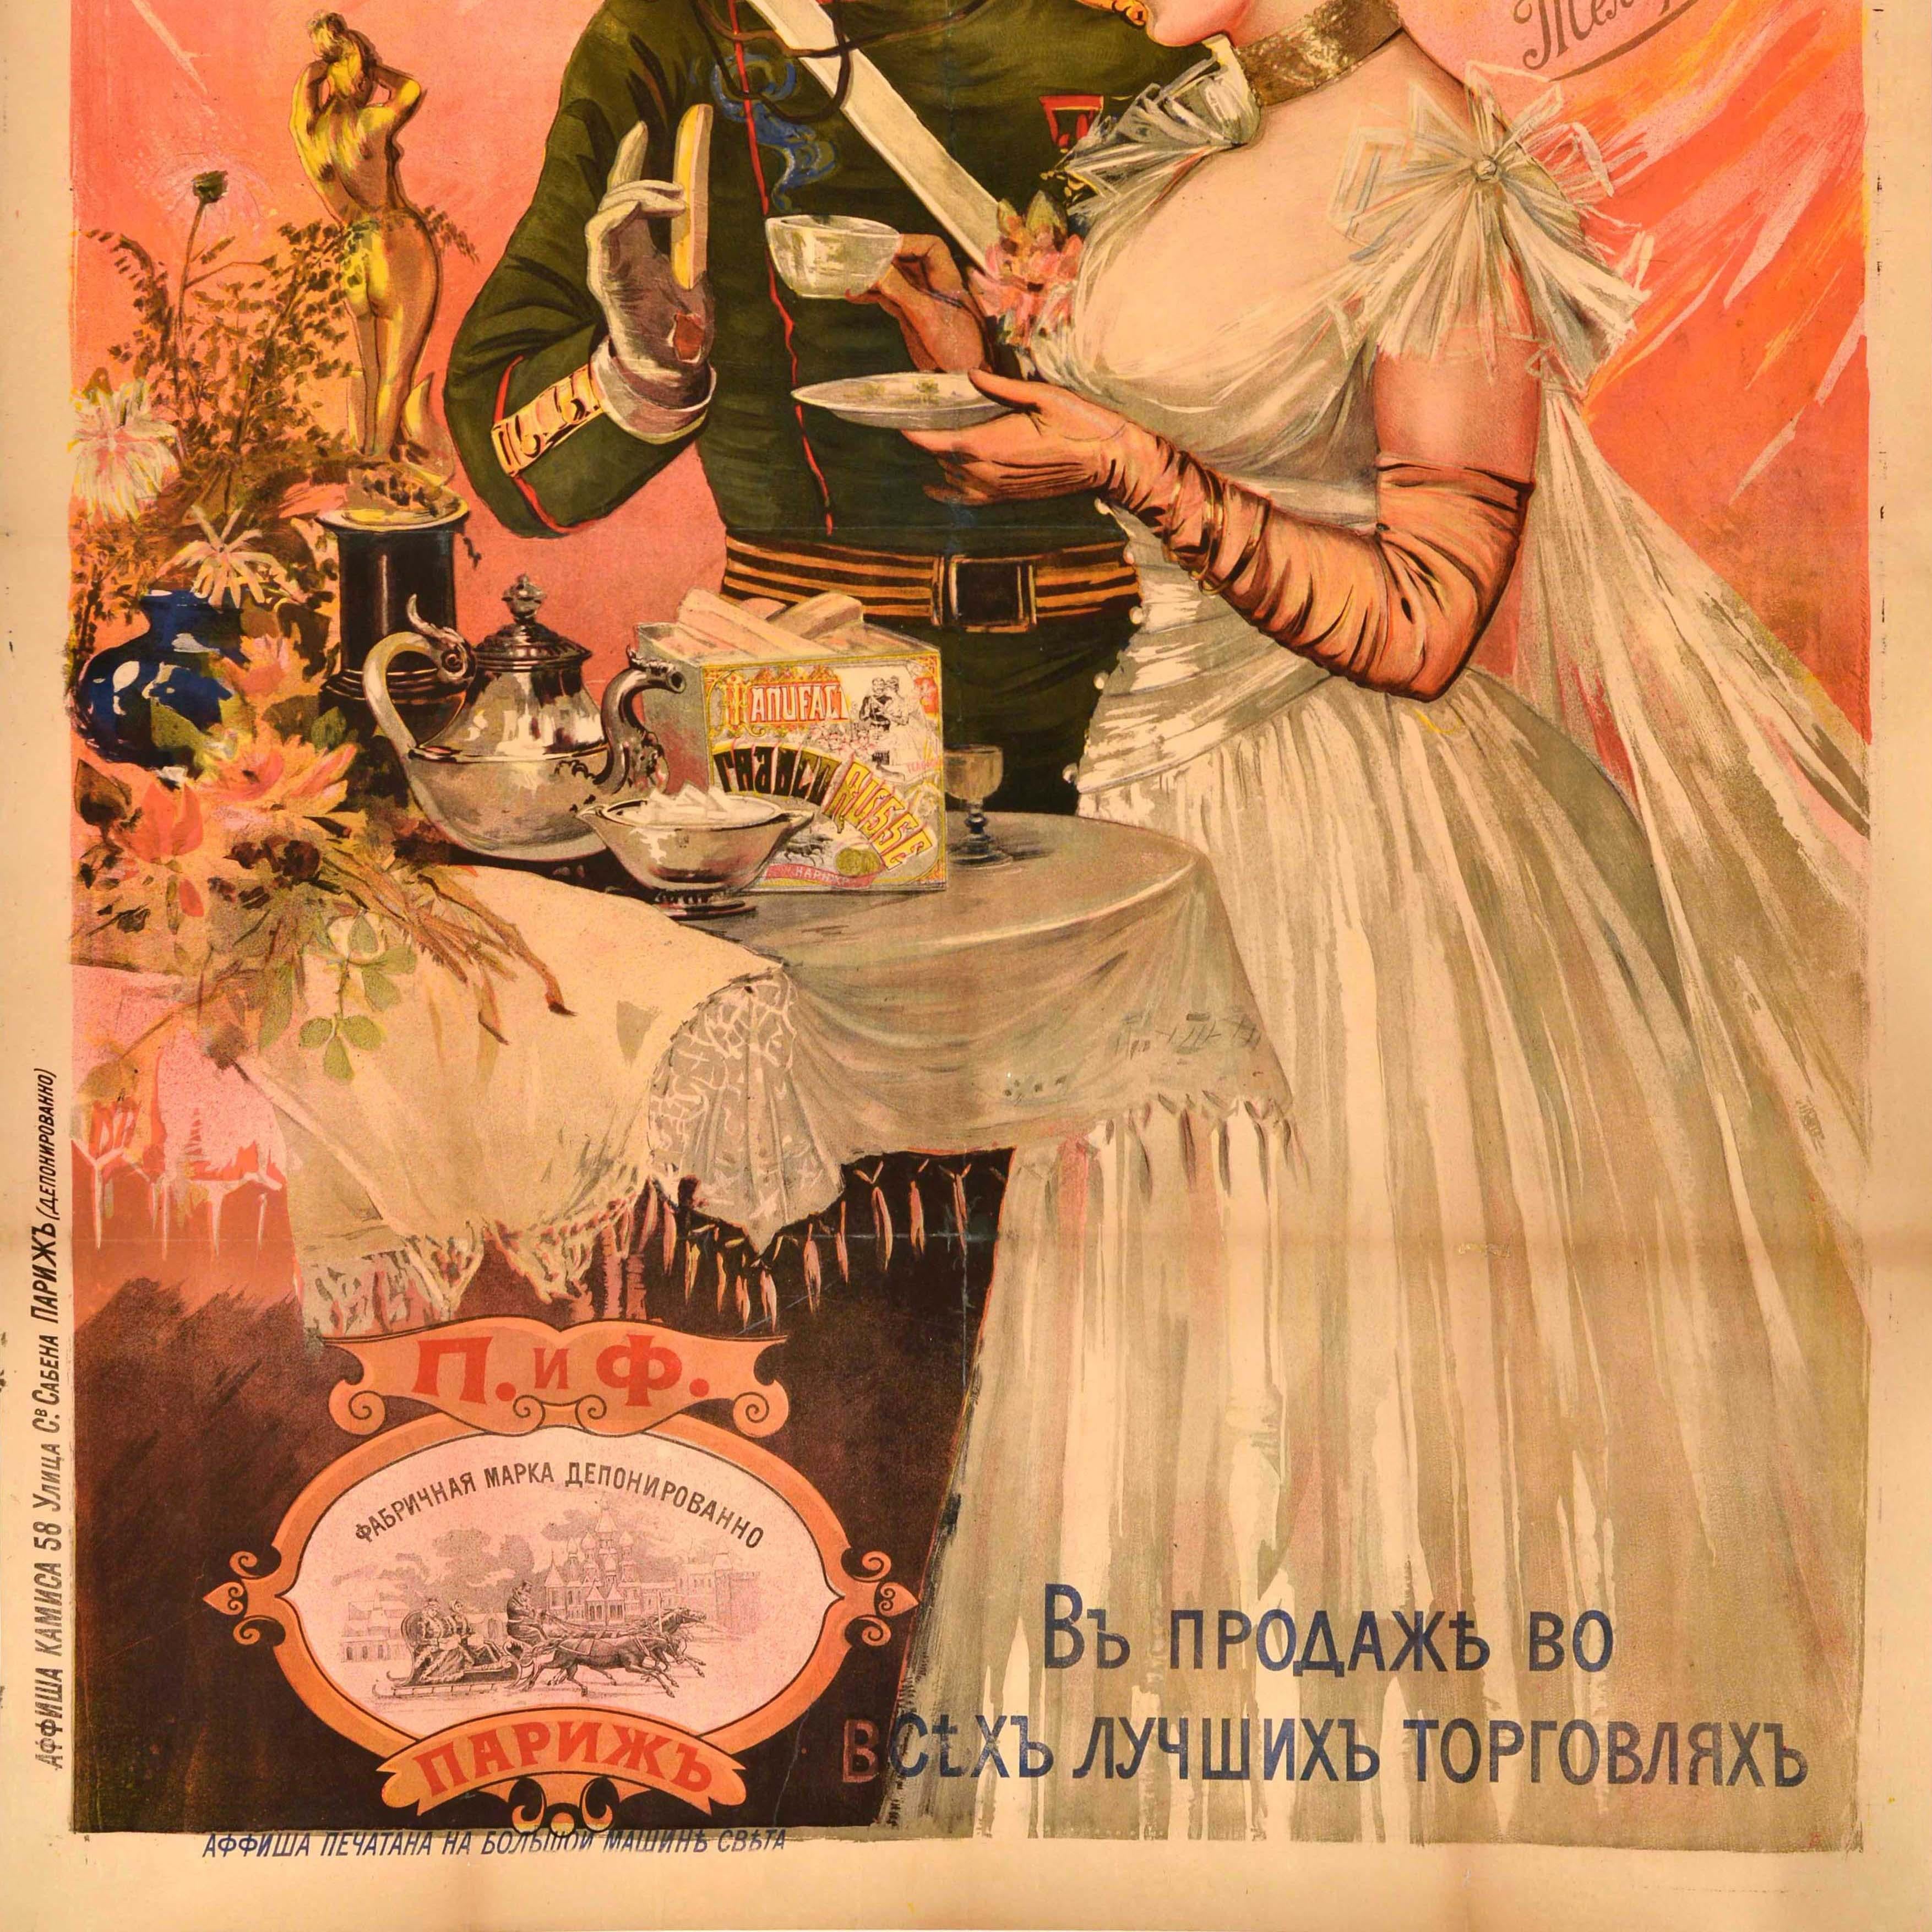 Affiche publicitaire originale pour la Франко Русская Фабрика / Franco Russian Factory présentant une illustration de style Belle Epoque d'une élégante dame en robe blanche tenant une tasse de thé et d'un gentleman moustachu en uniforme portant un